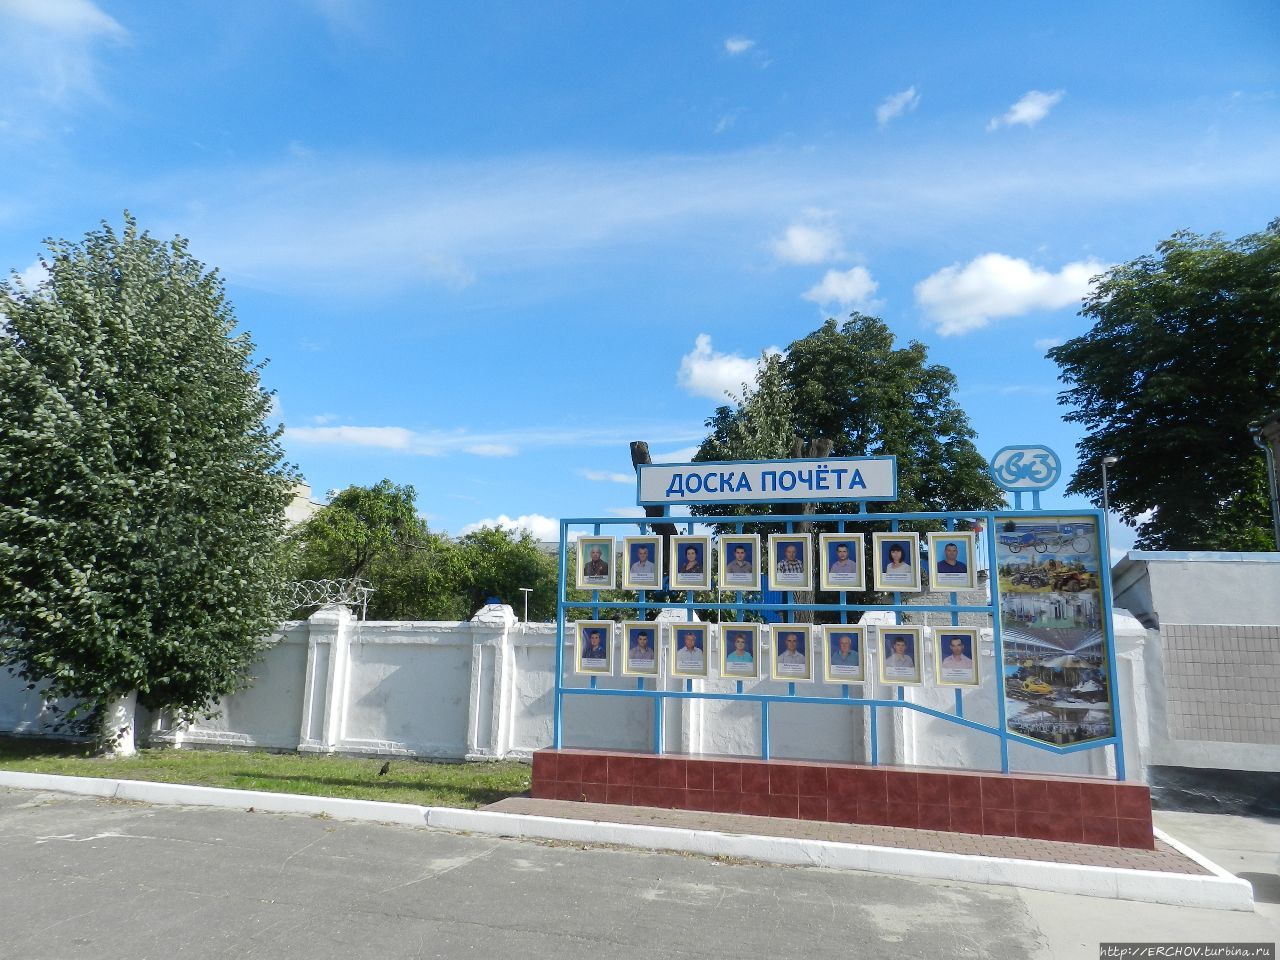 Жуковка (Районный центр Брянской области) Жуковка, Россия